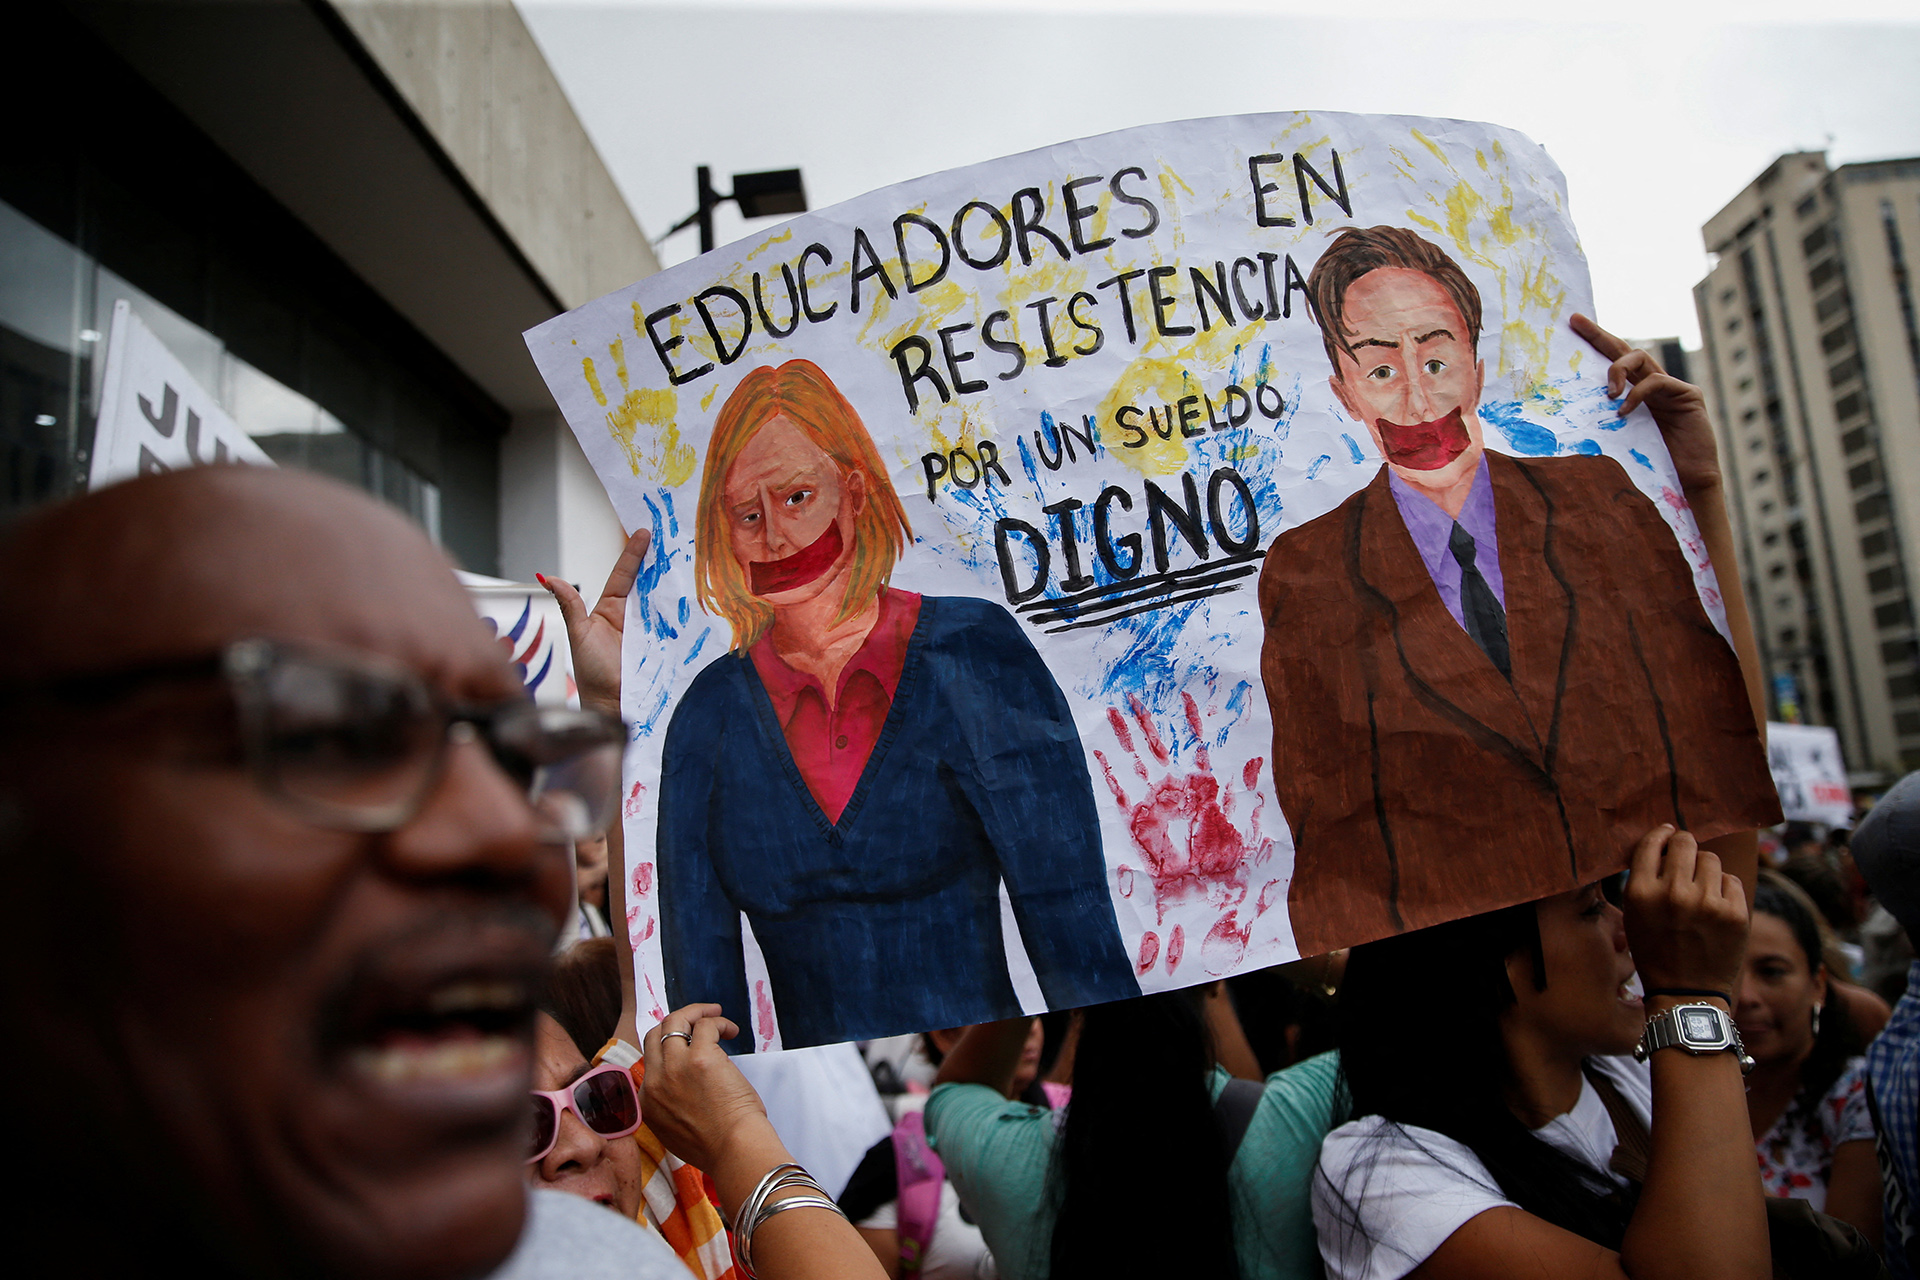 Profesores sostienen un cartel en el que se lee "Educadores en resistencia, por un salario digno", durante una protesta en Caracas (REUTERS/Leonardo Fernandez Viloria)